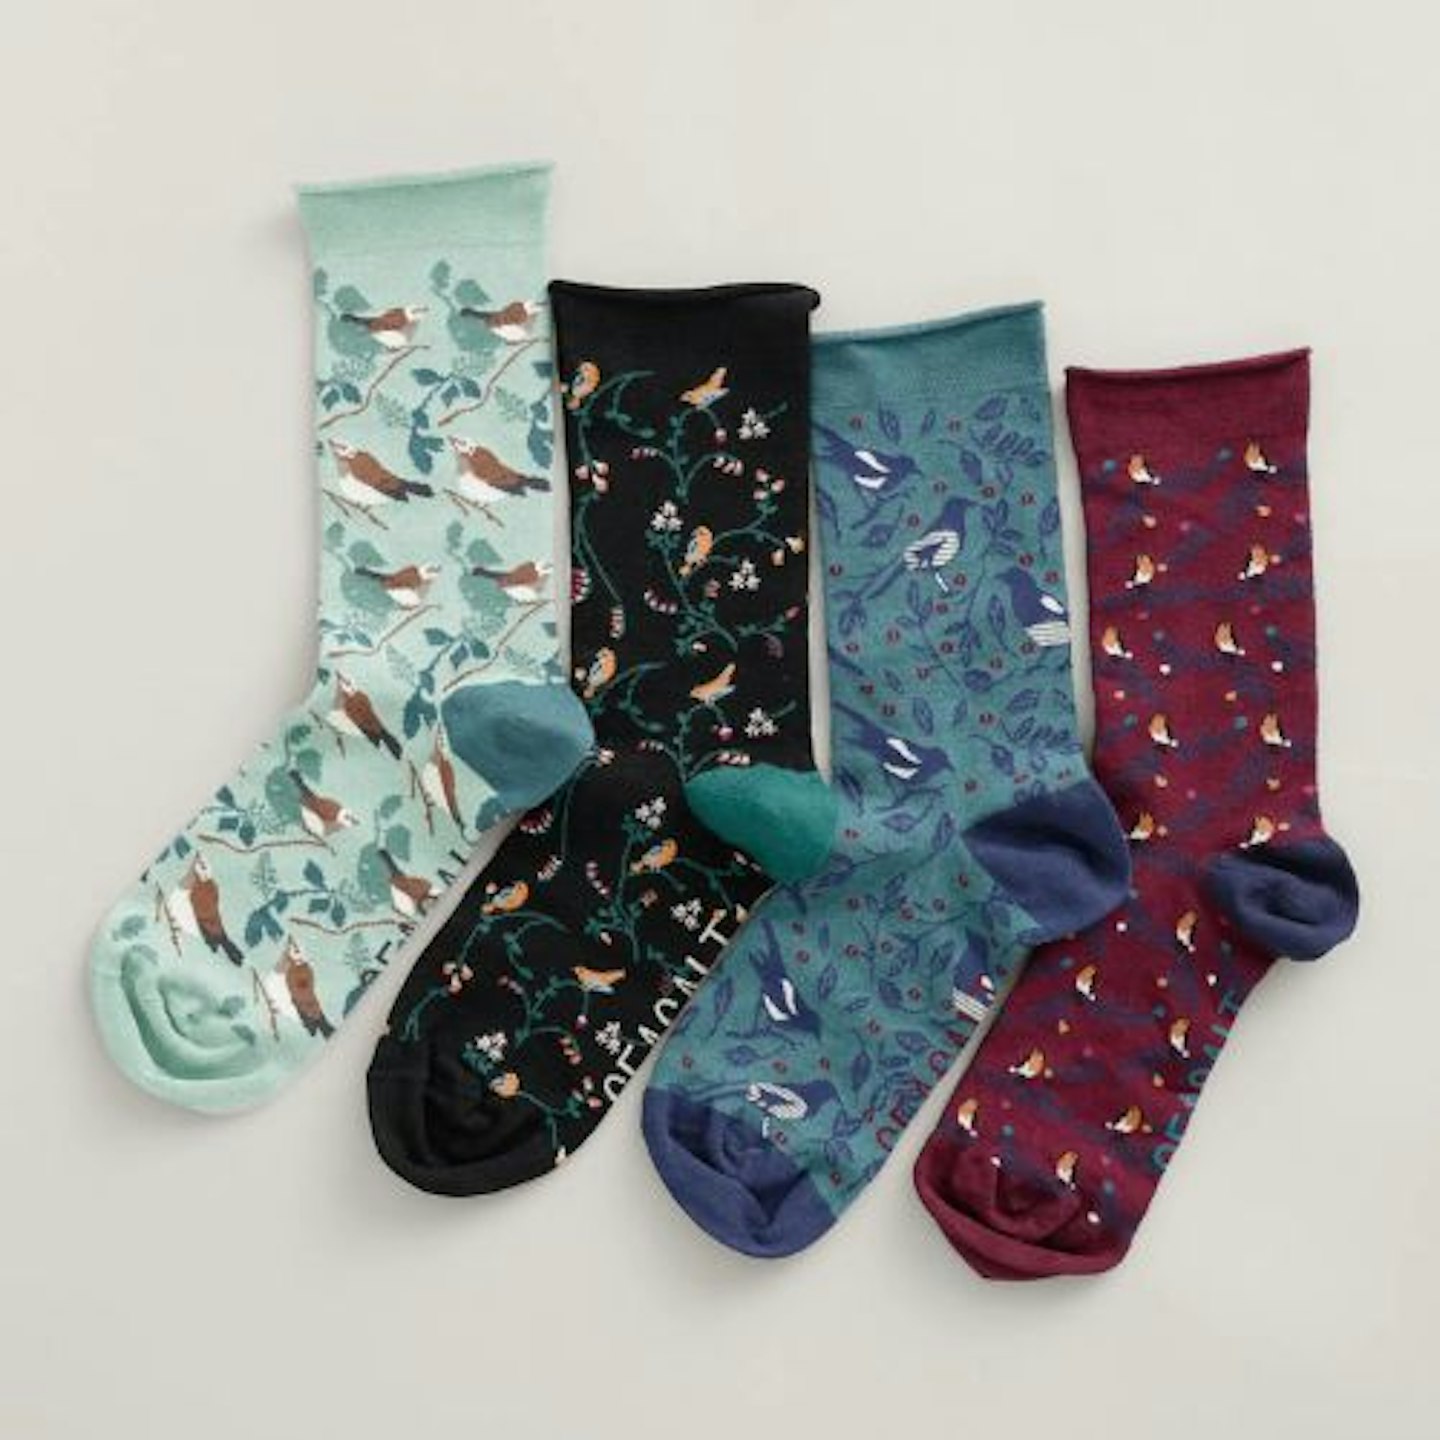 Gift Box of 4 Women's Sailor Socks